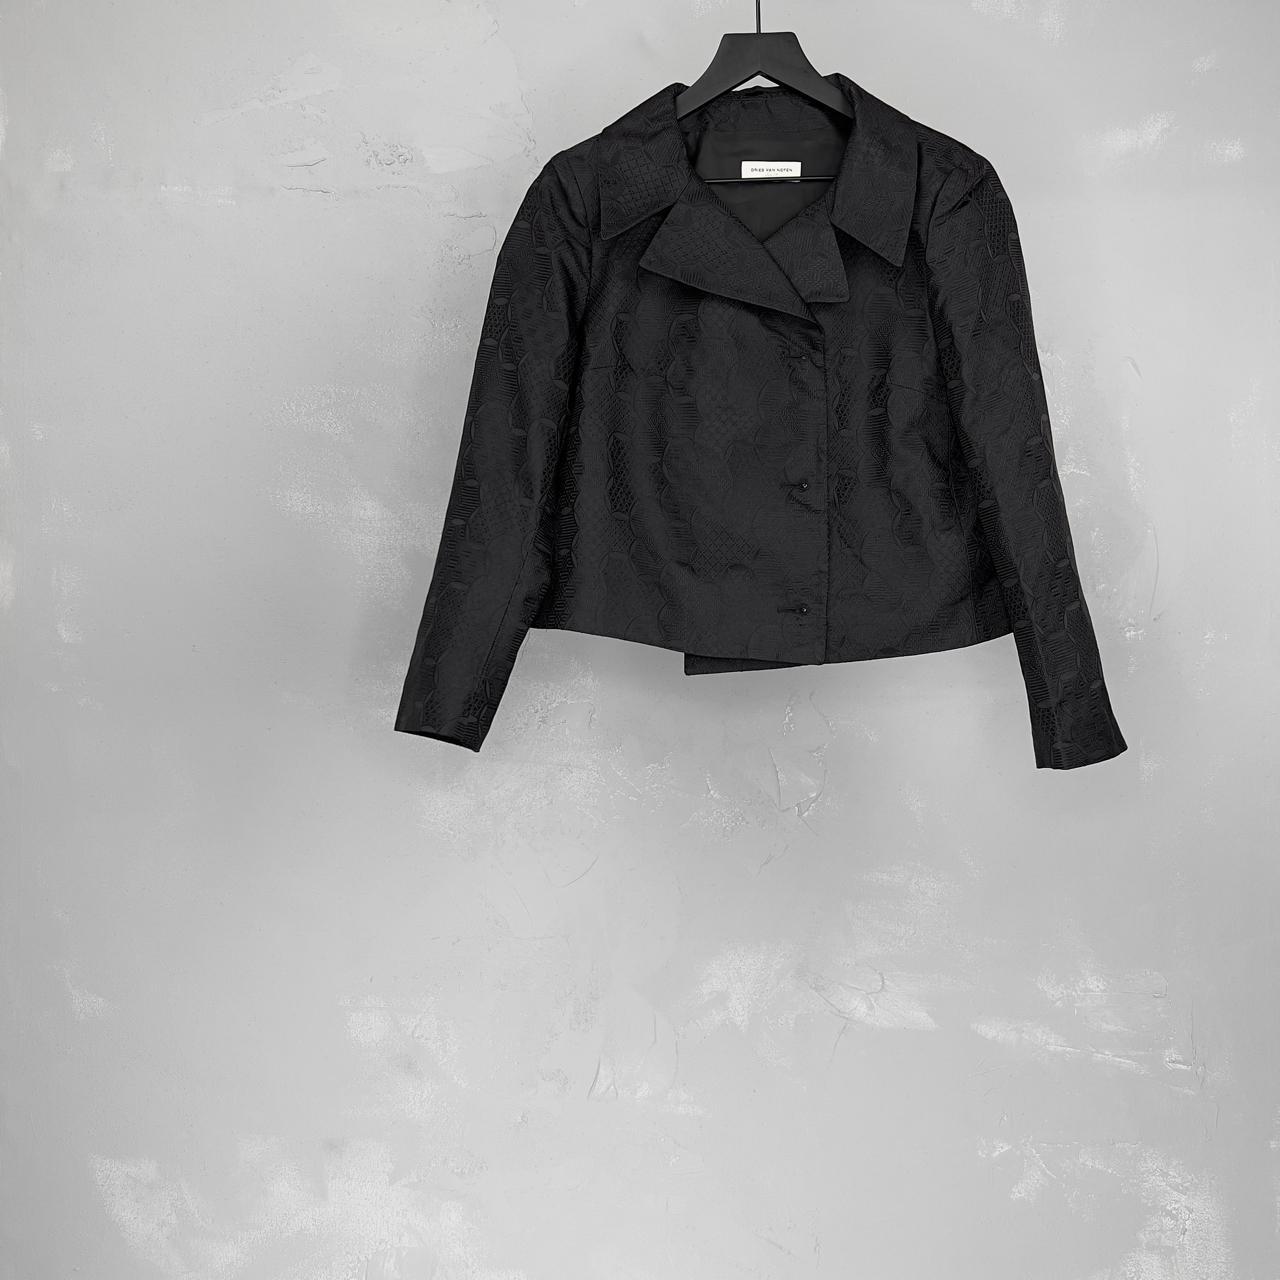 Dries Van Noten Women's Black Jacket